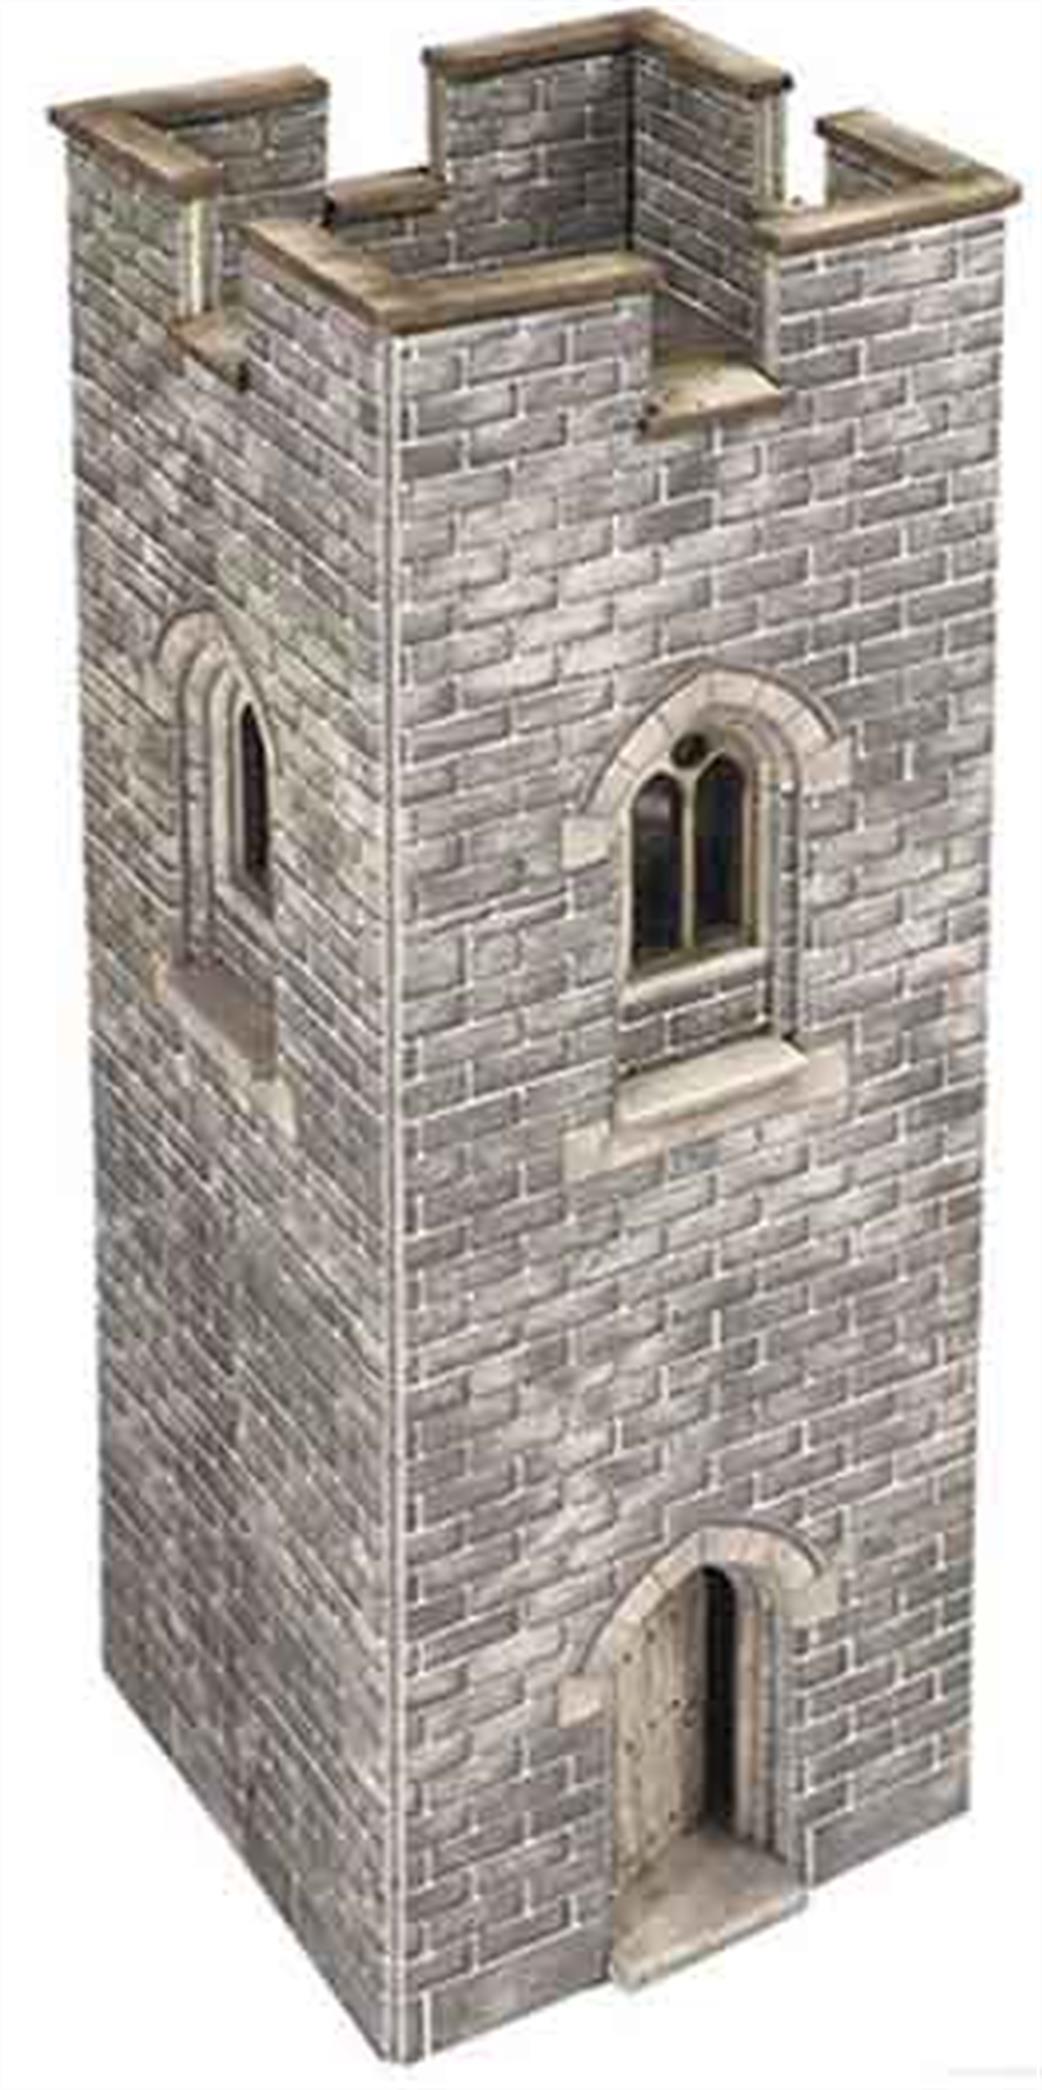 Metcalfe N PN192 Castle Watch Tower Printed Card Kit